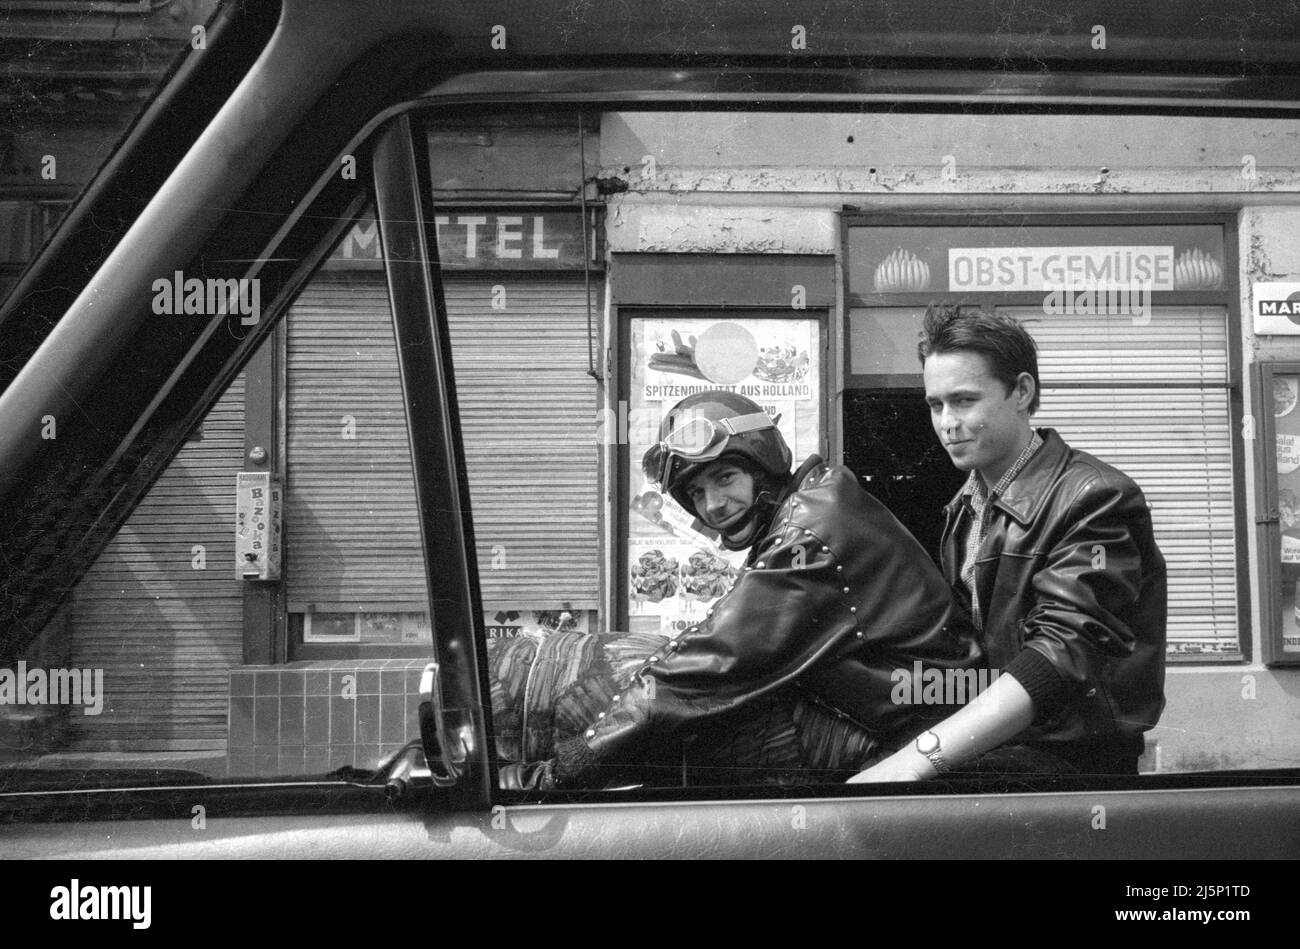 Membri dei Red Devils, una gang giovanile a Norimberga. I giovani indossano giacche decorate in pelle, si avvolge e passano il tempo a cavallo delle motociclette. [traduzione automatizzata] Foto Stock